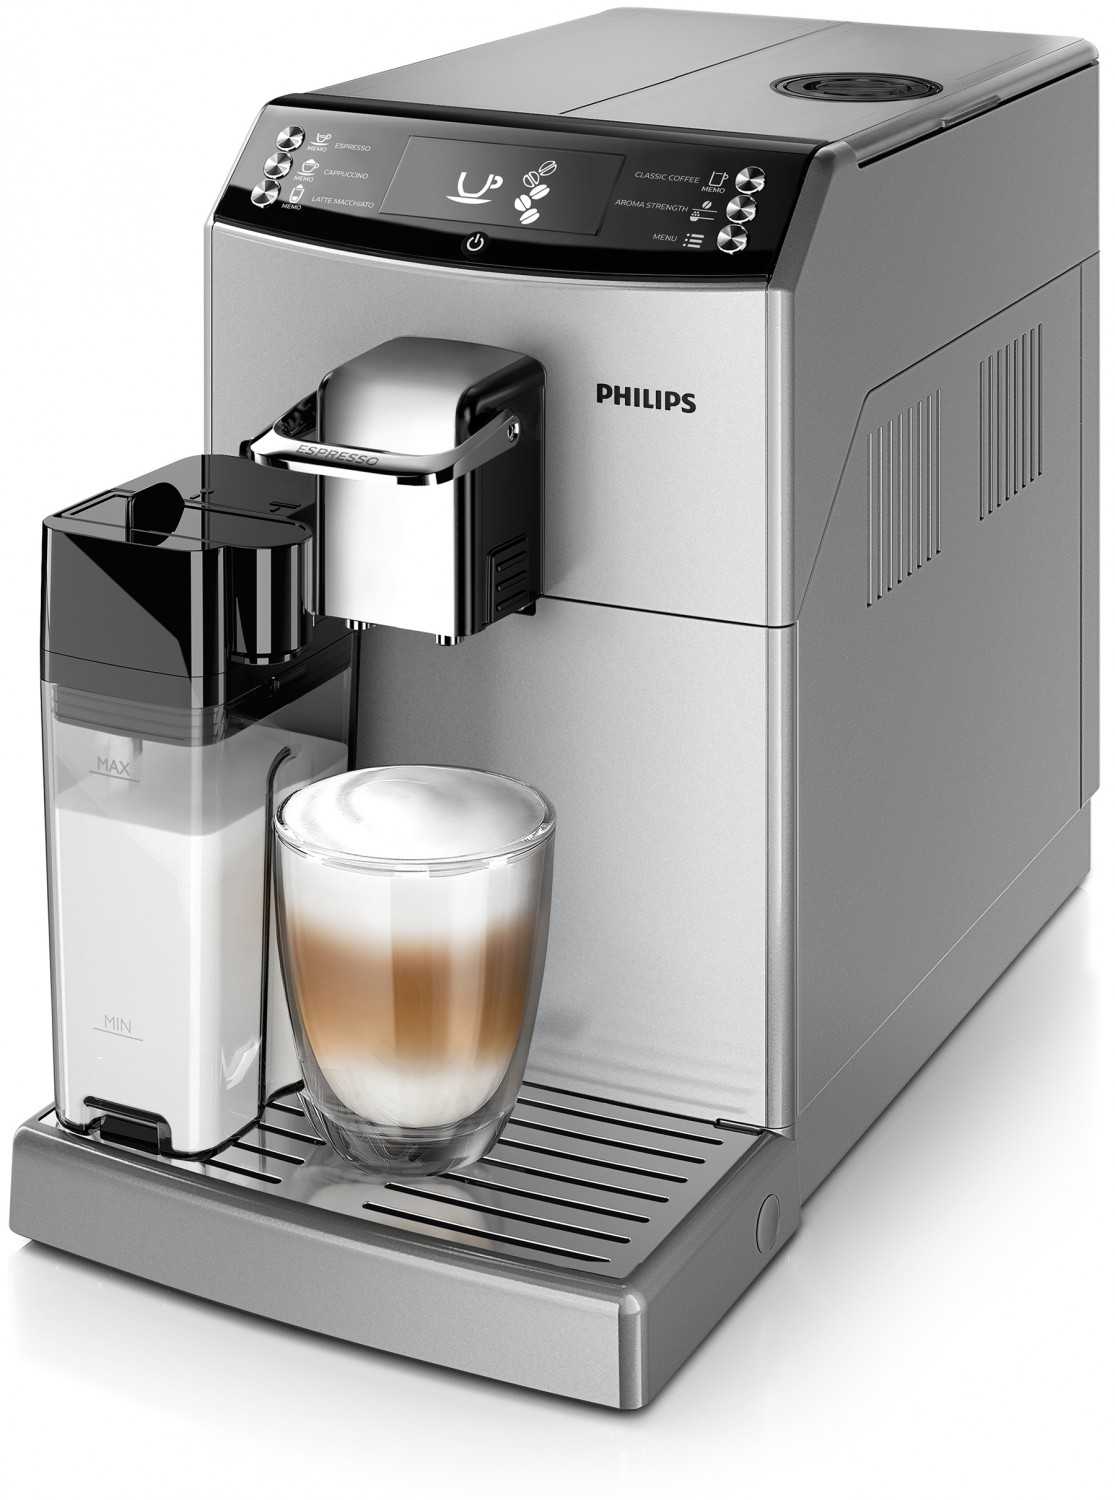 Haushaltsgeräte Von Espresso bis Café au Lait: Neuer Vollautomat von Philips kommt in den Handel - News, Bild 1